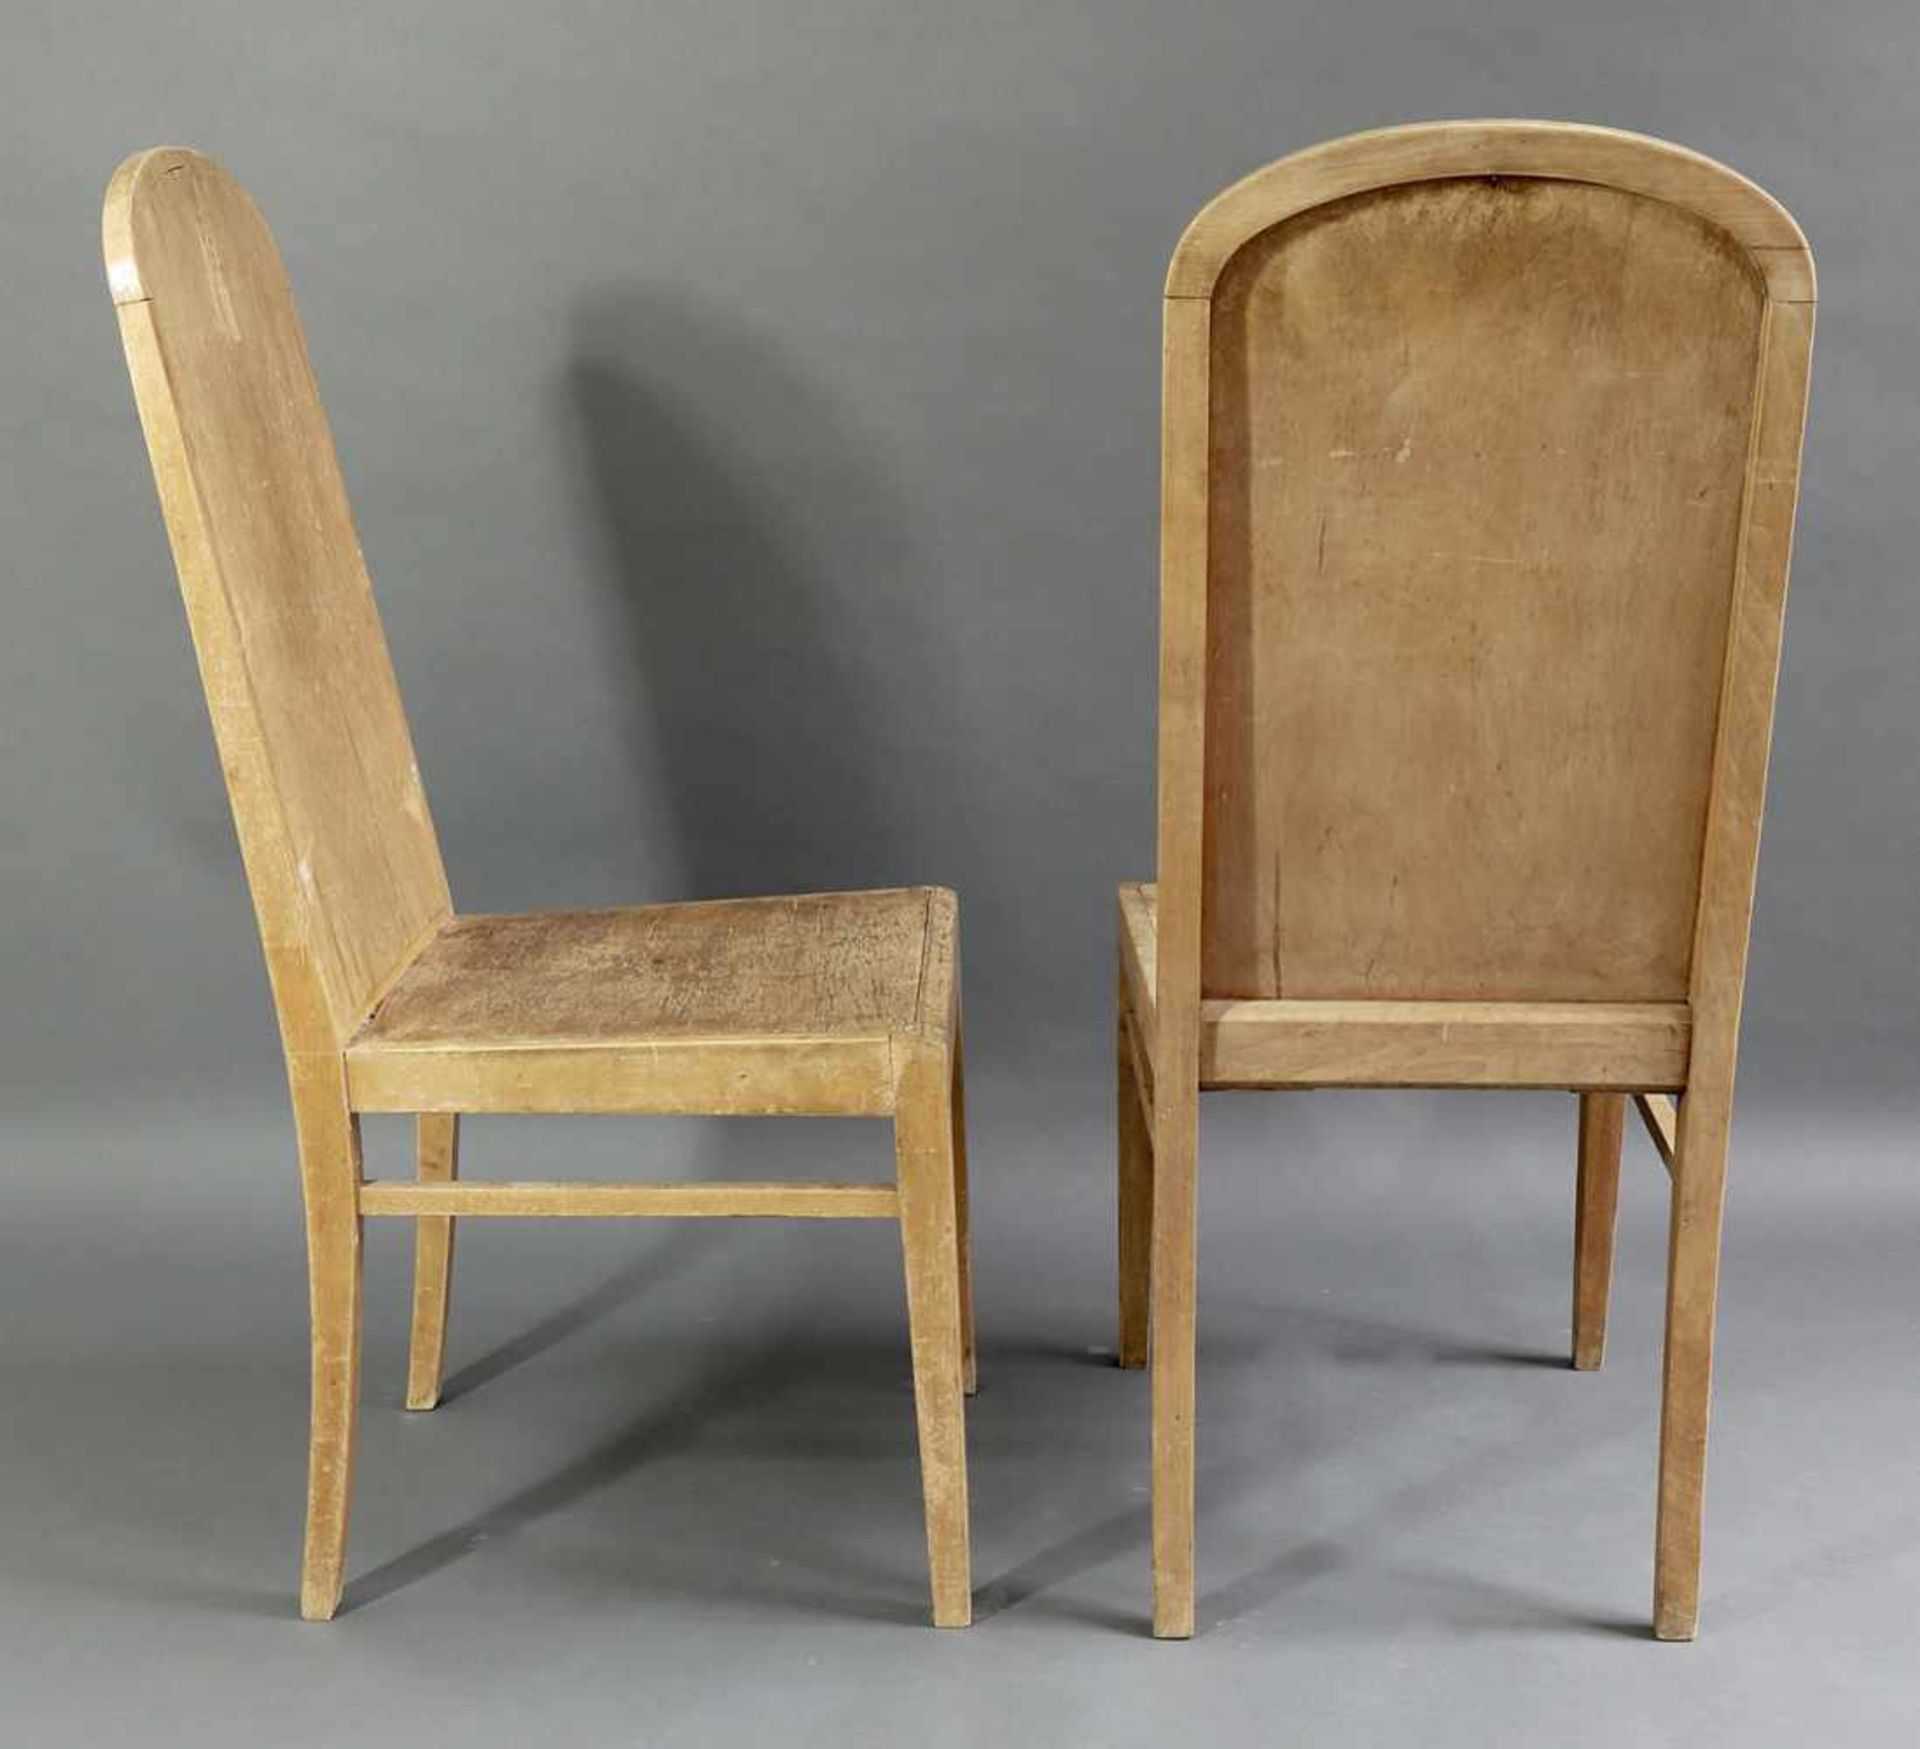 Rudolf SteinerRudolf Steiner 2 early Chairs Schreinereistuhl2 early chairs model - Bild 2 aus 3